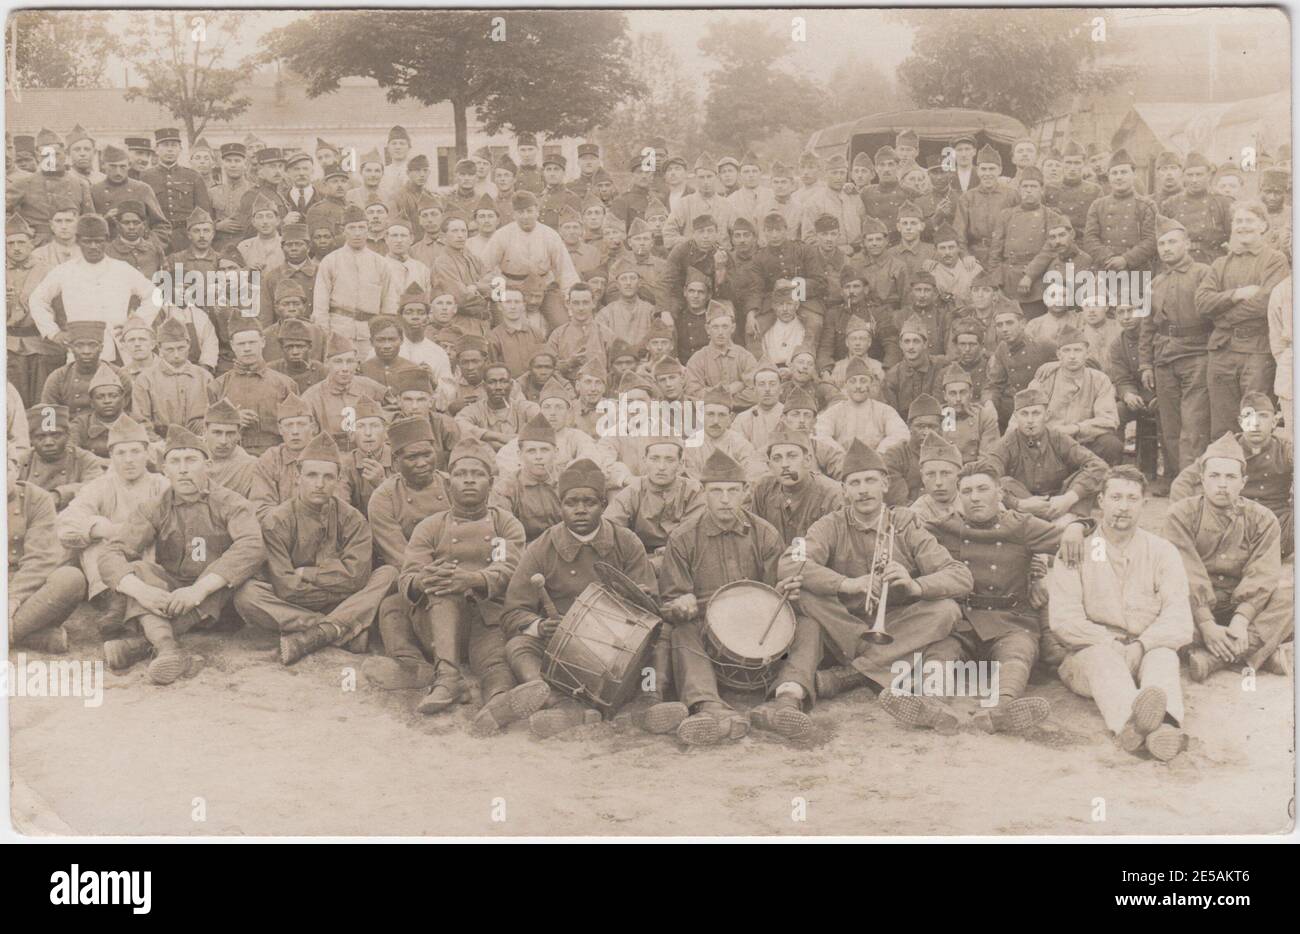 Un grande gruppo di soldati francesi e africani insieme nel campo durante la prima guerra mondiale. Davanti al gruppo ci sono tre uomini (due bianchi, uno nero) con strumenti musicali: Una tromba, una batteria e un cembalo Foto Stock